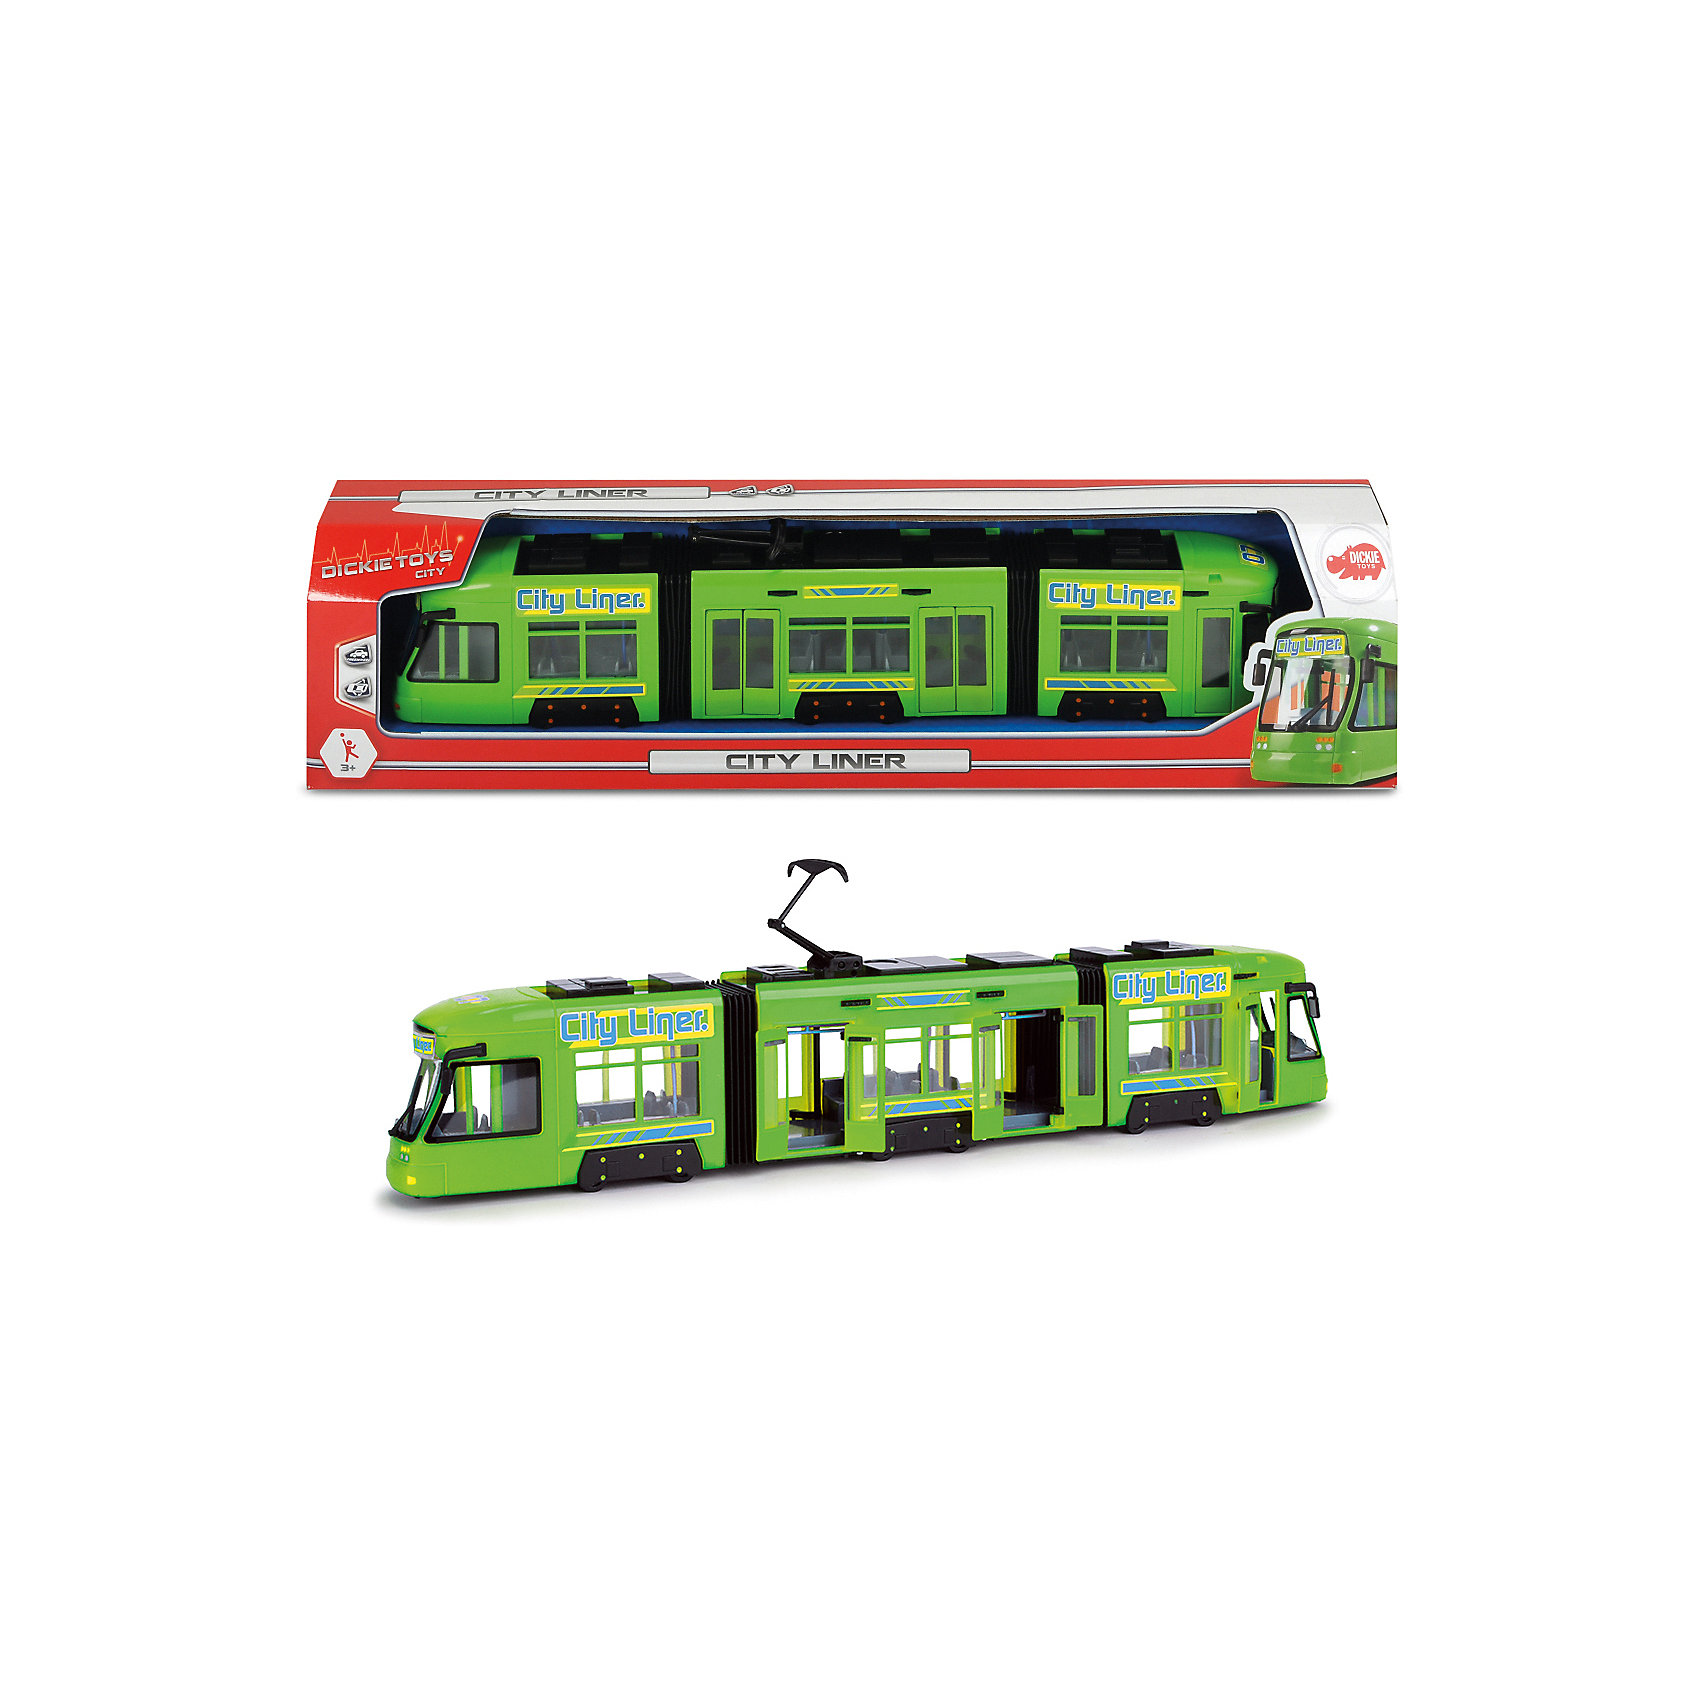 Городской трамвай зеленый, 46 см Dickie Toys 13005857